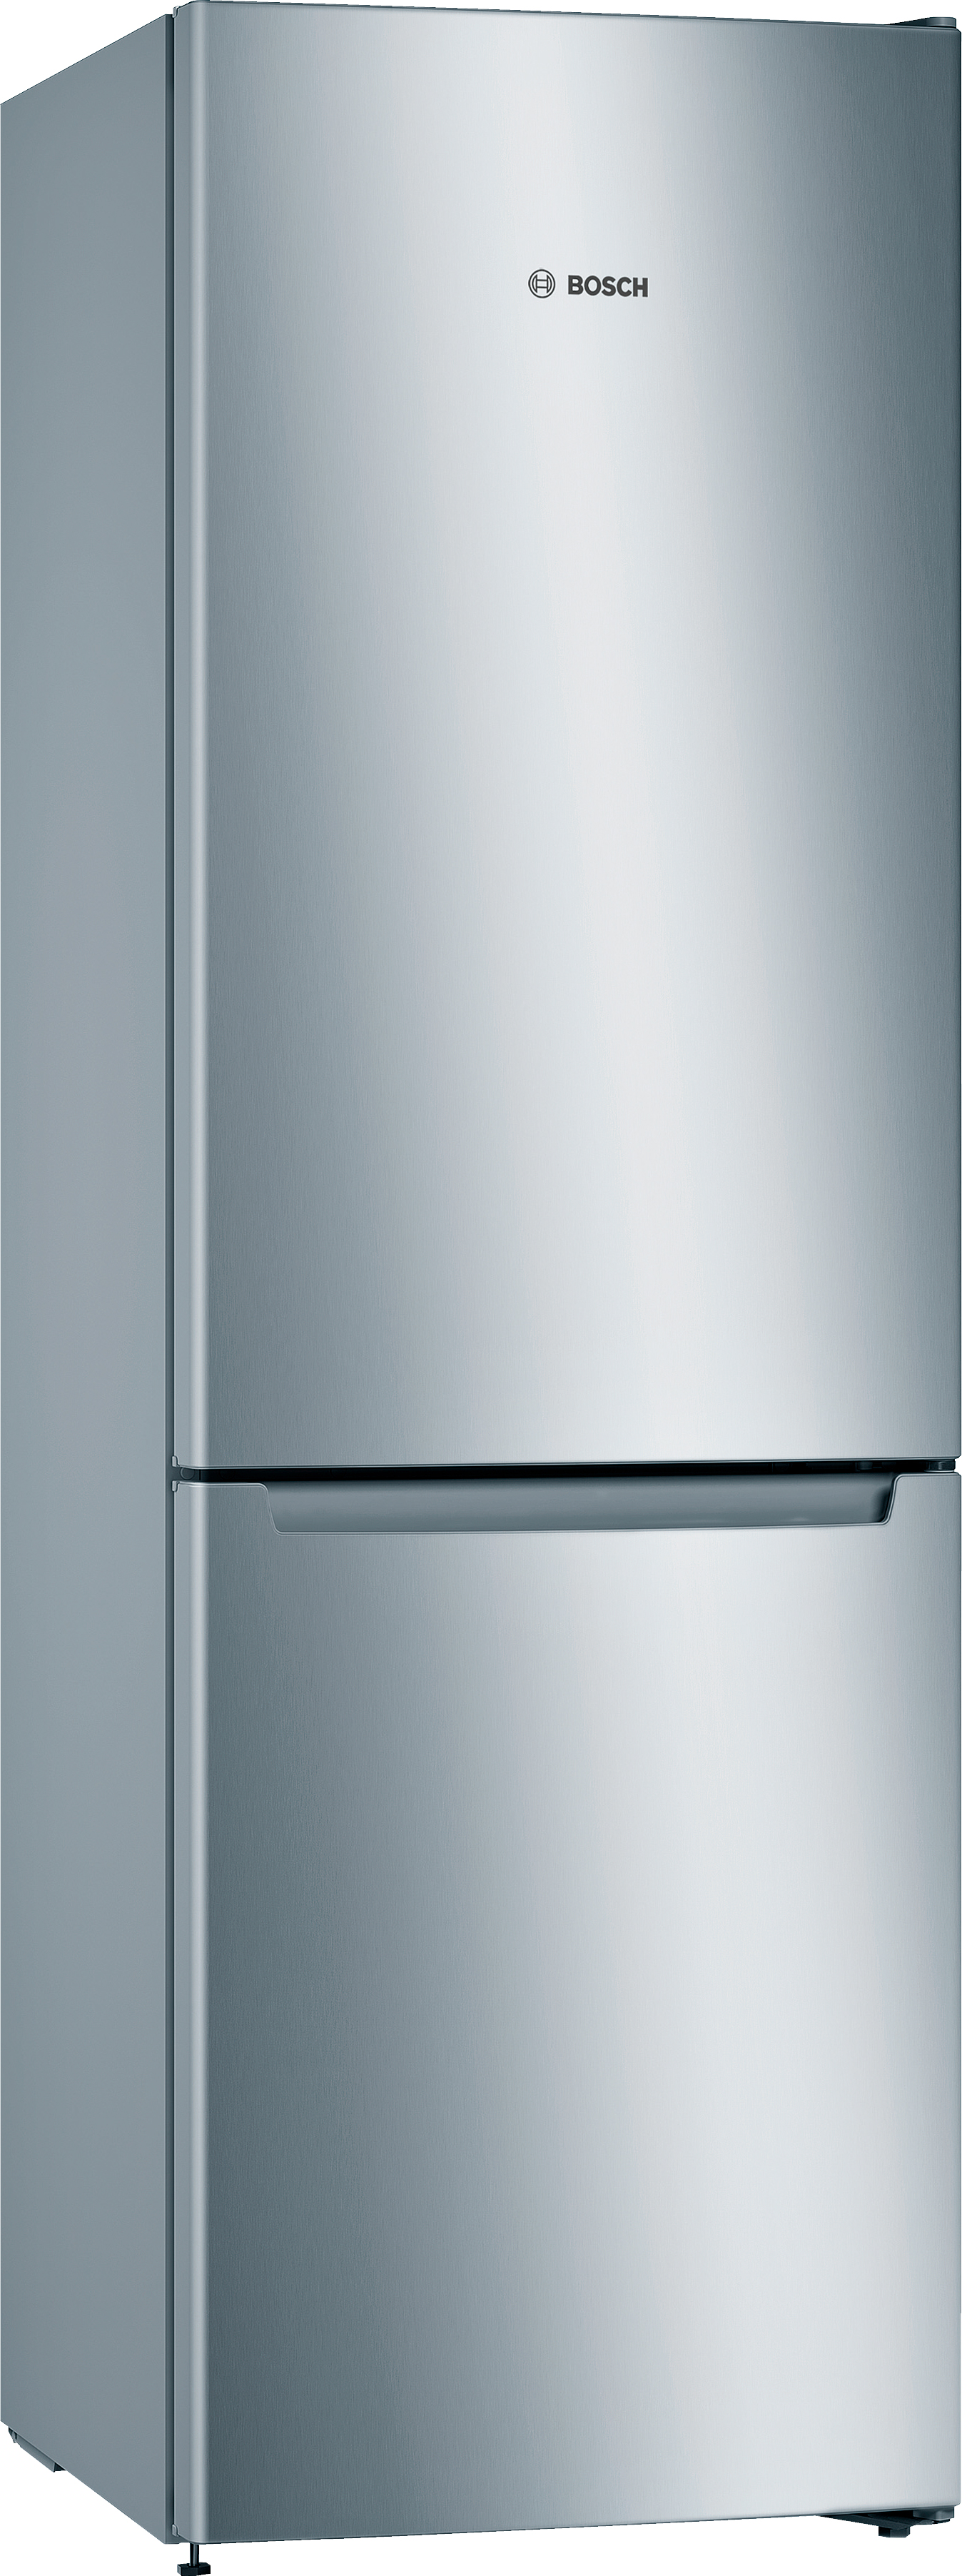 Инструкция холодильник Bosch KGN33NL206